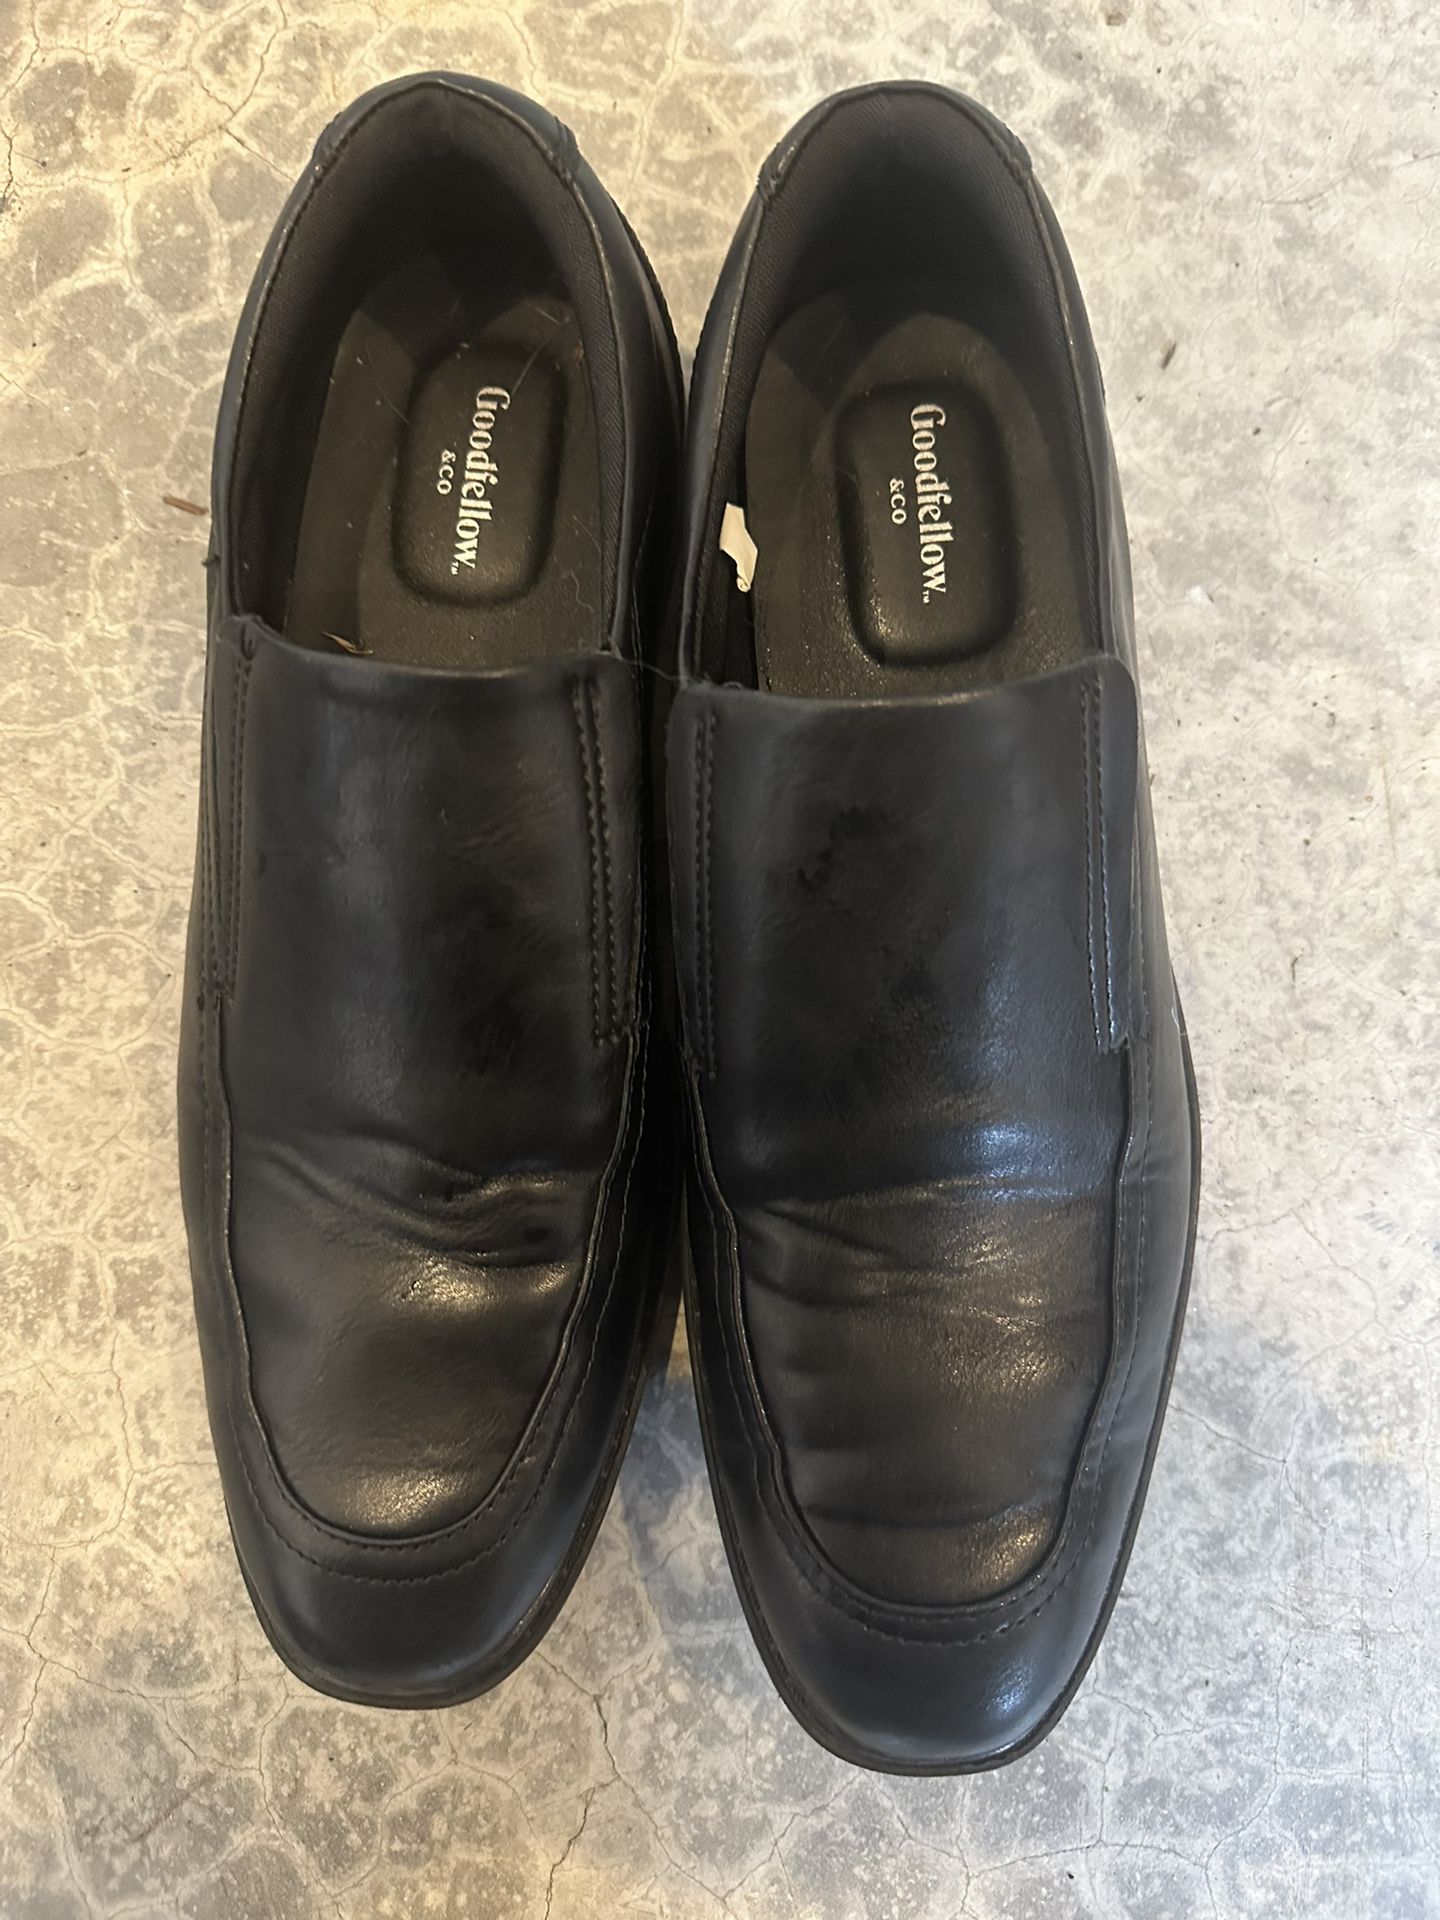 Men’s Black Dress Shoes 